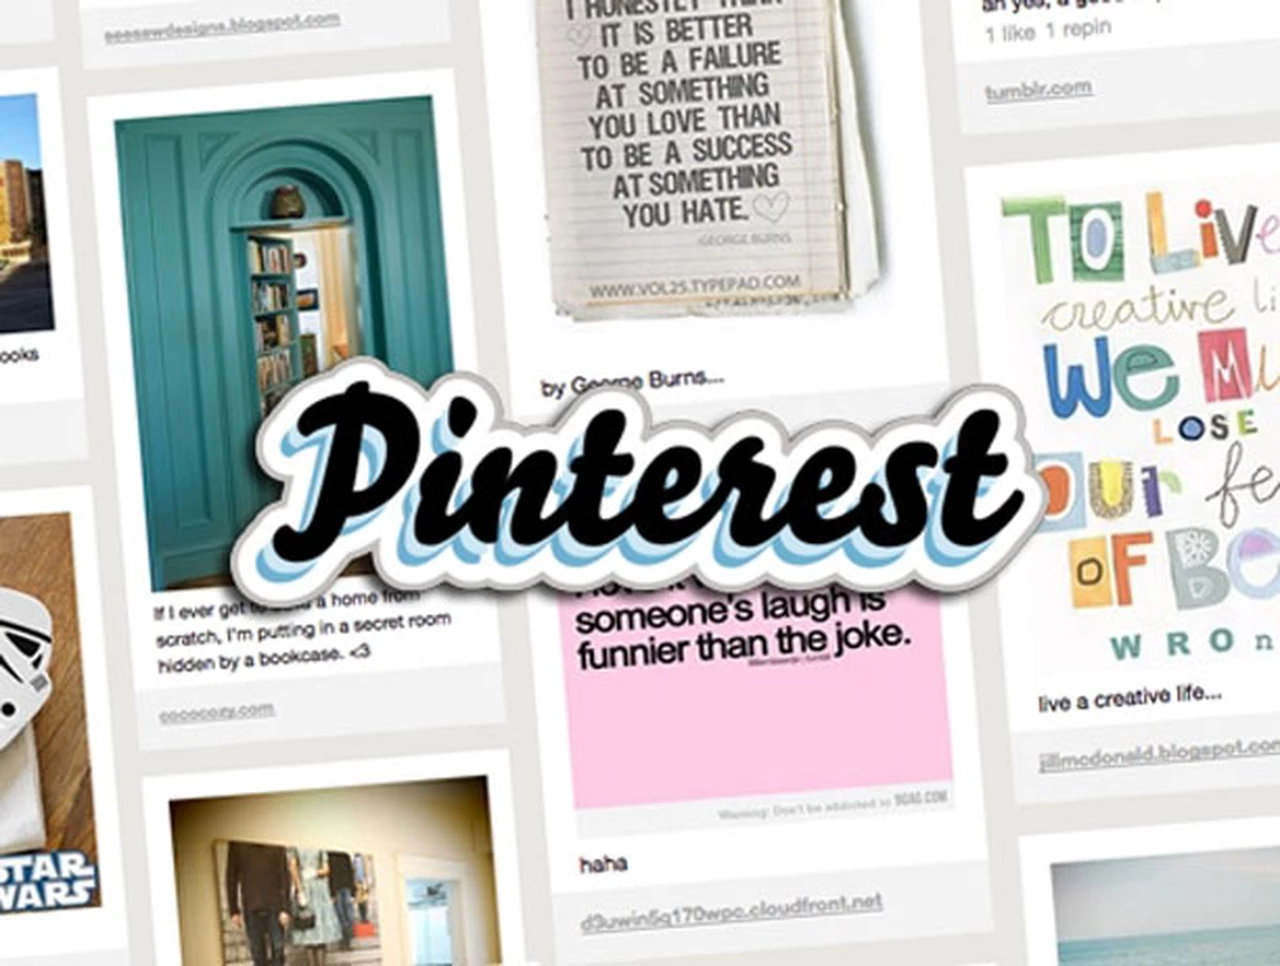 La red social Pinterest abre a todo el mundo sus herramientas publicitarias